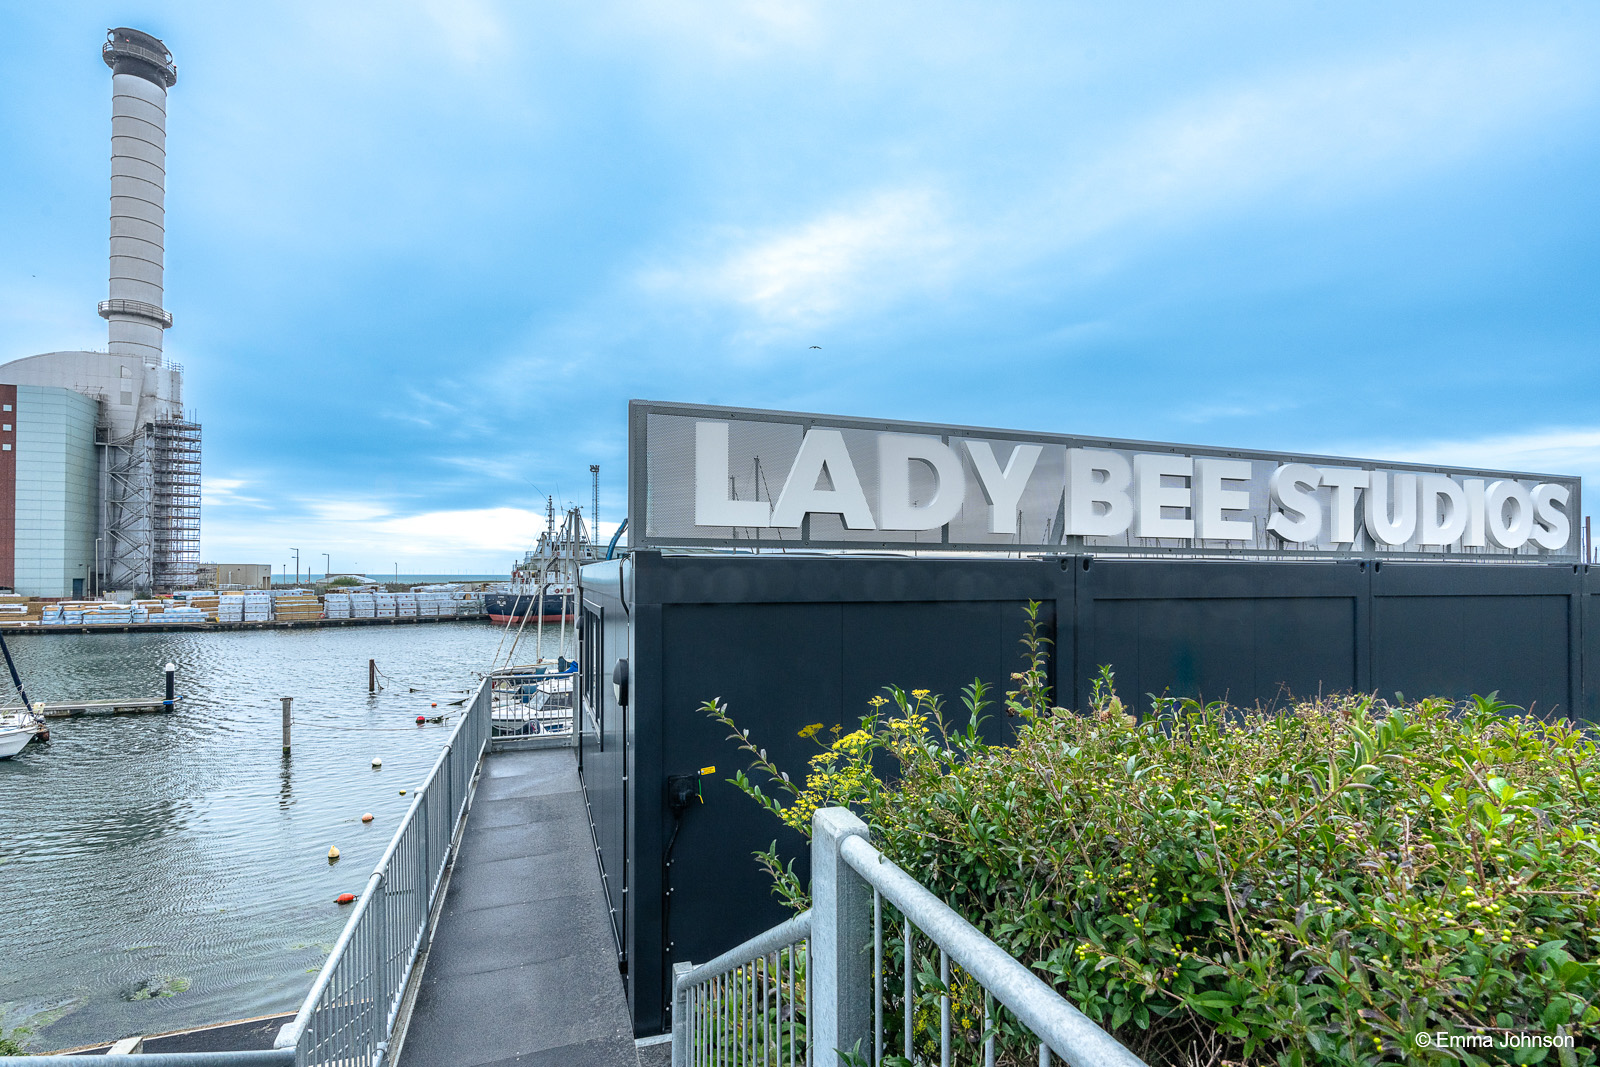 Lady Bee Studios